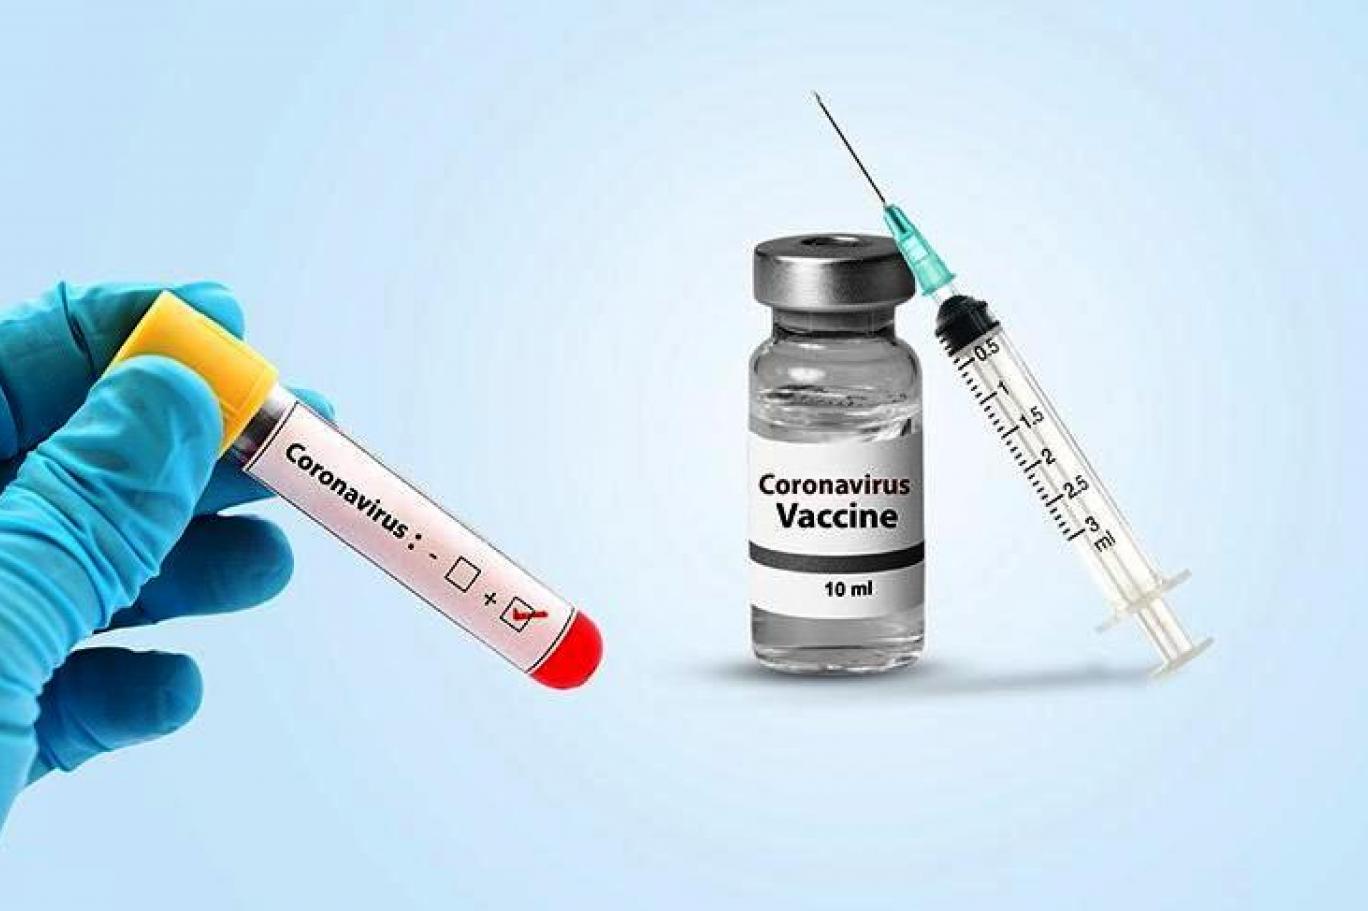 Rusya'dan koronavirüs aşısı açıklaması: Ayda 6 milyon doz üretmeyi planlıyoruz | Independent Türkçe